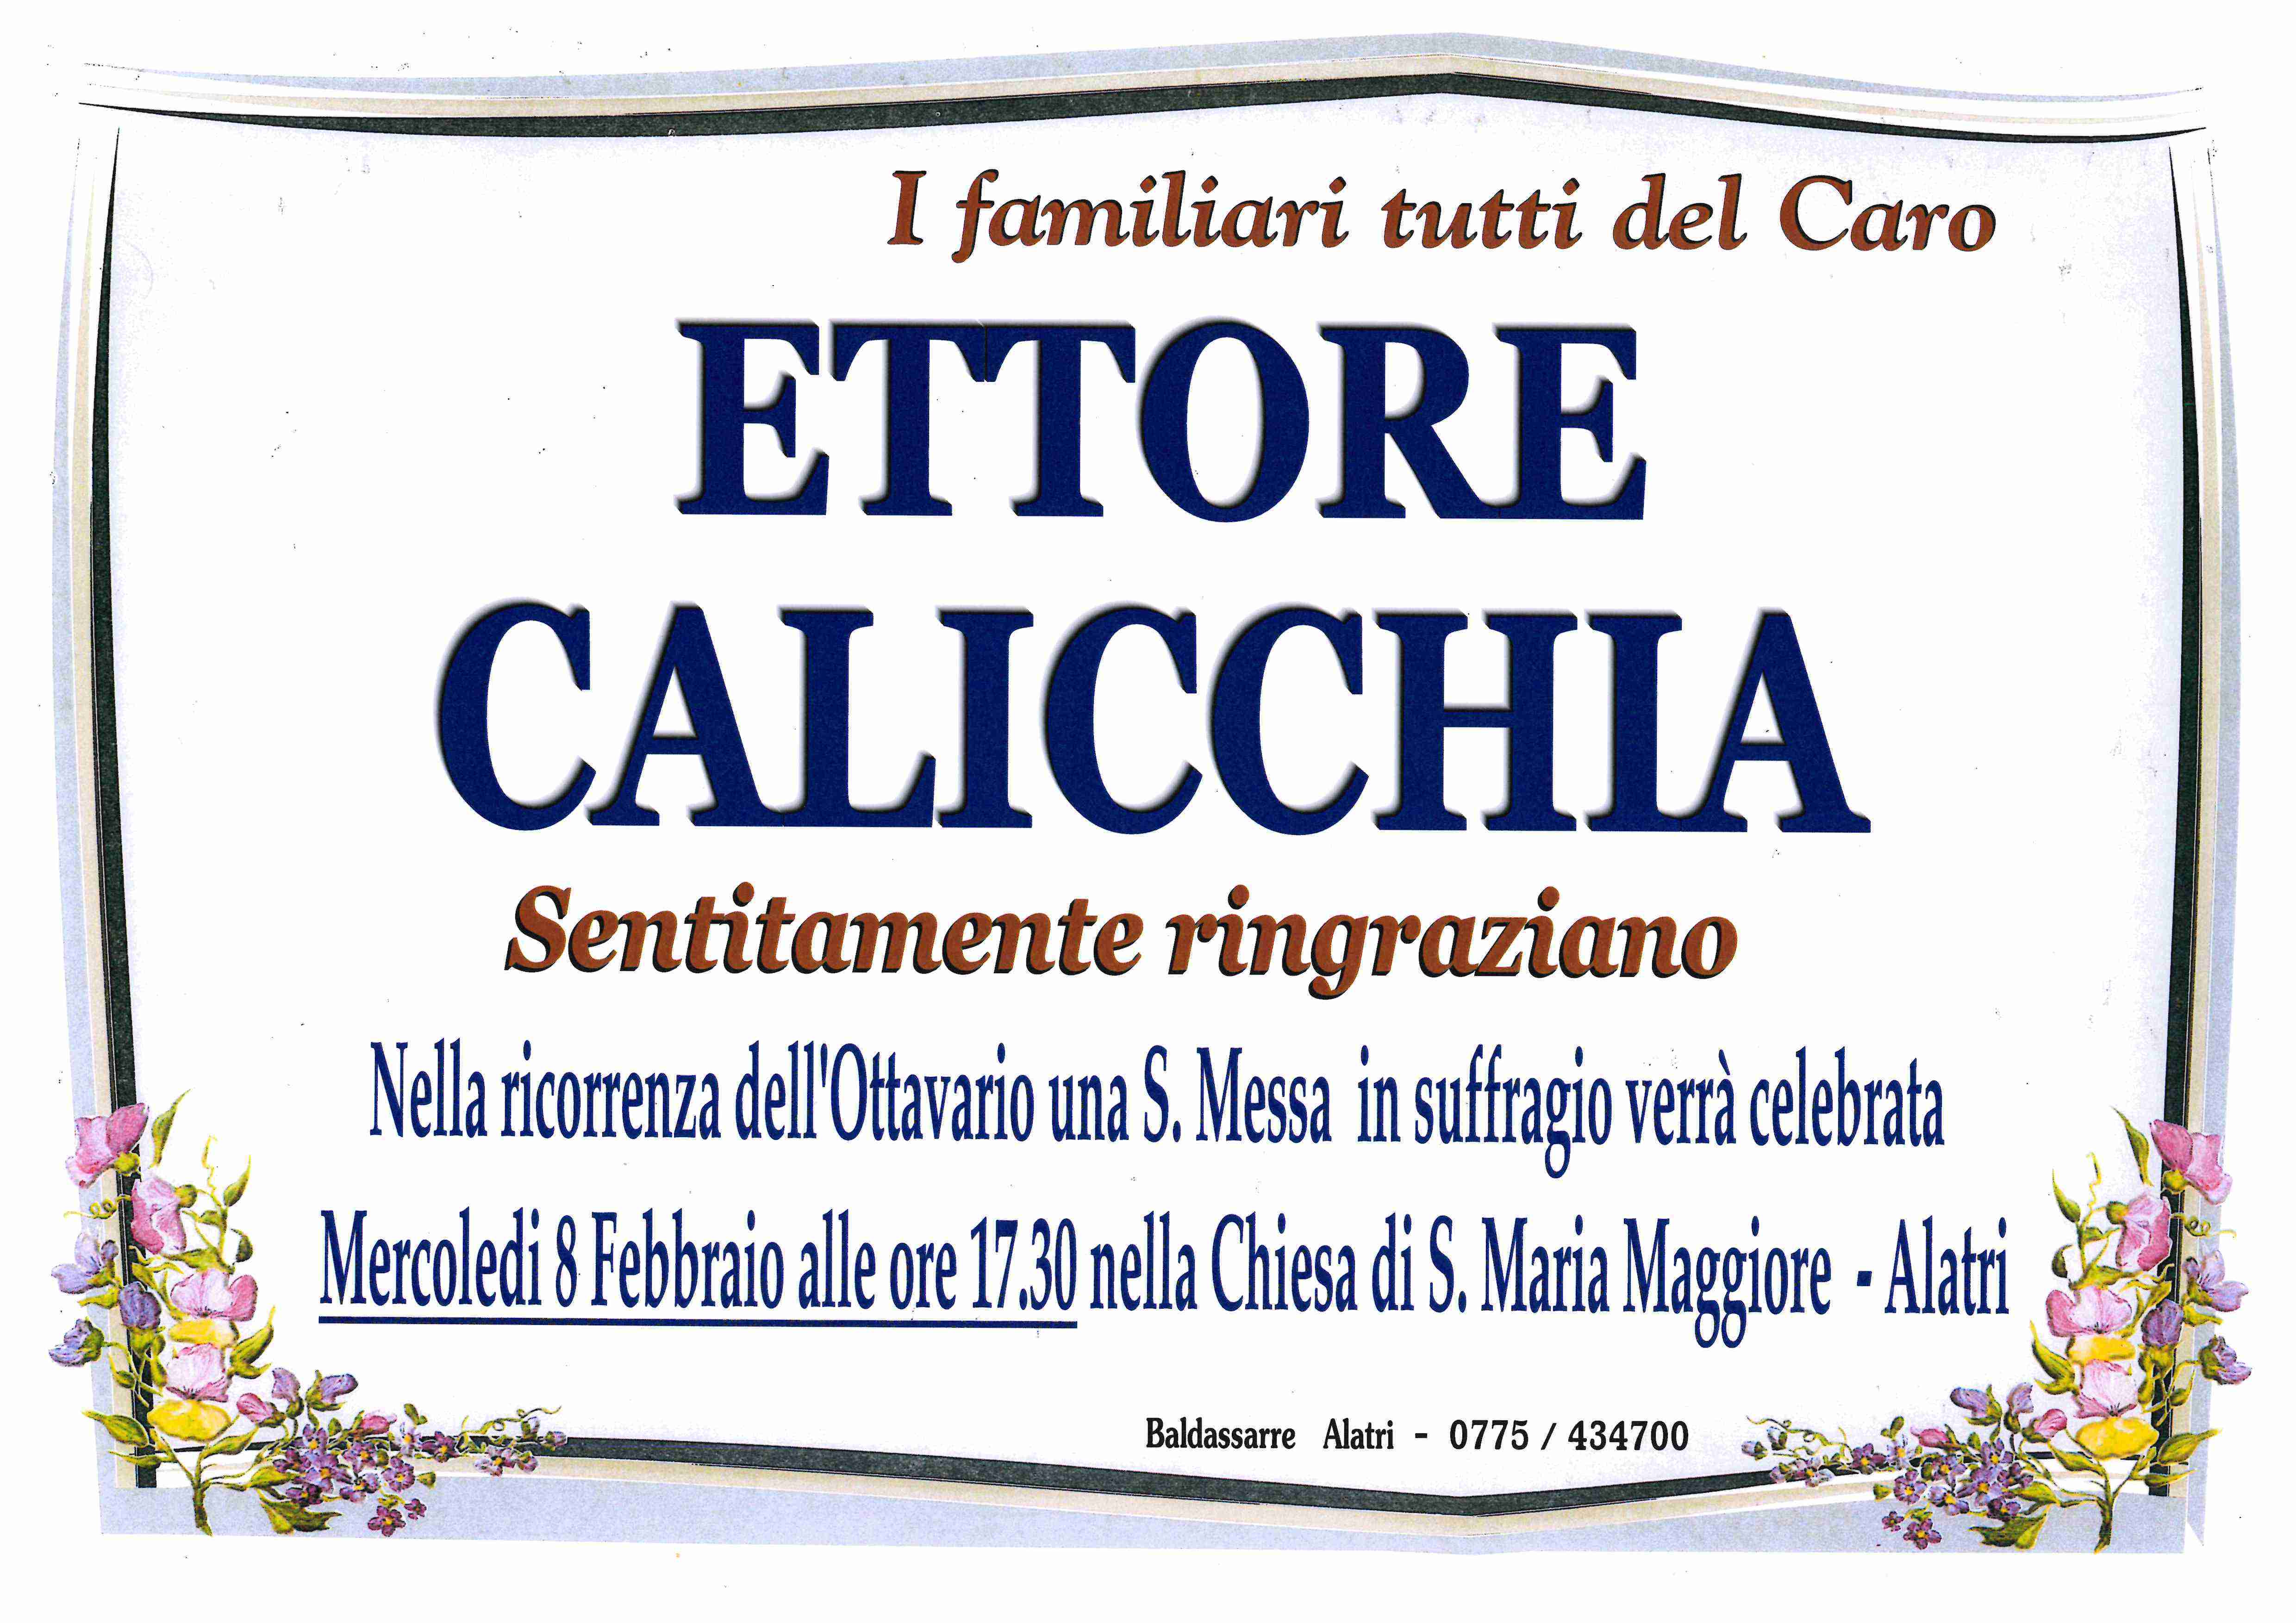 Ettore Calicchia